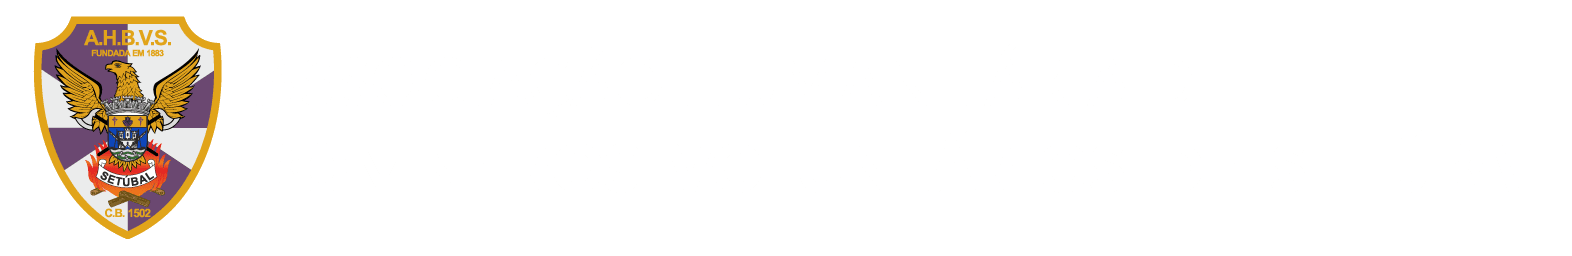 Associação Humanitária dos Bombeiros Voluntários de Setúbal